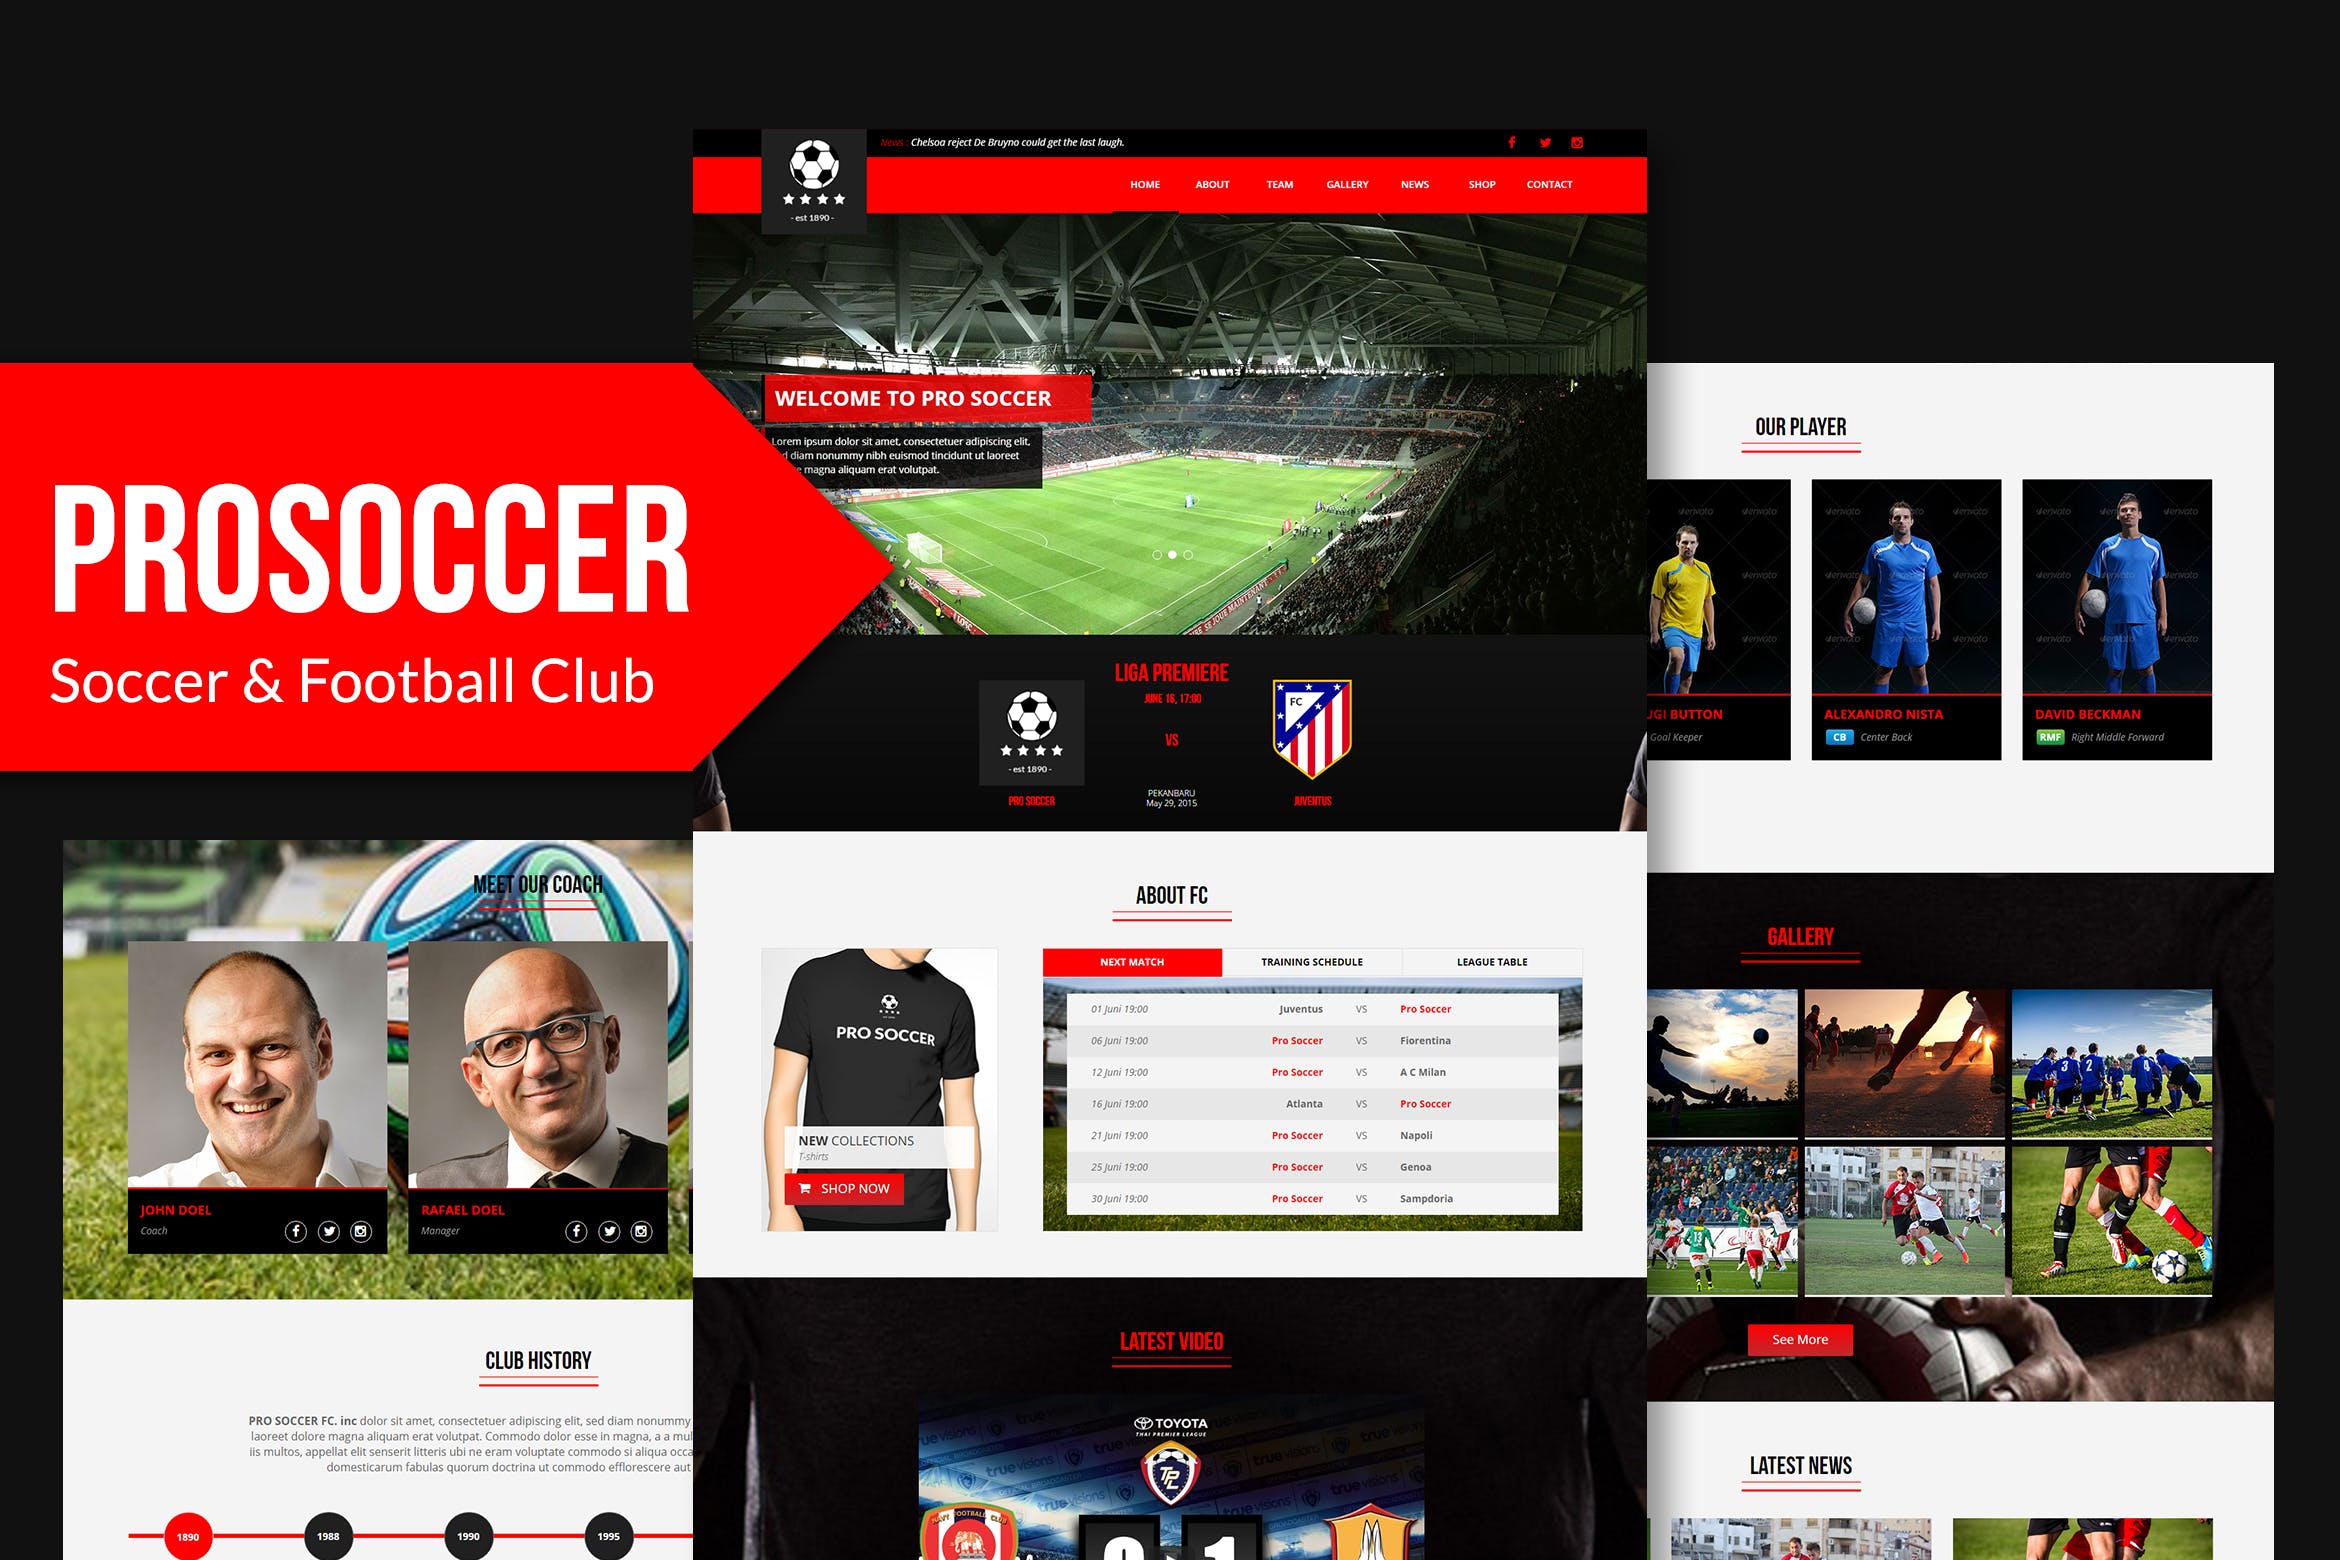 足球俱乐部网站设计Muse模板素材库精选 Pro Soccer – Football & Soccer Club Muse Template插图